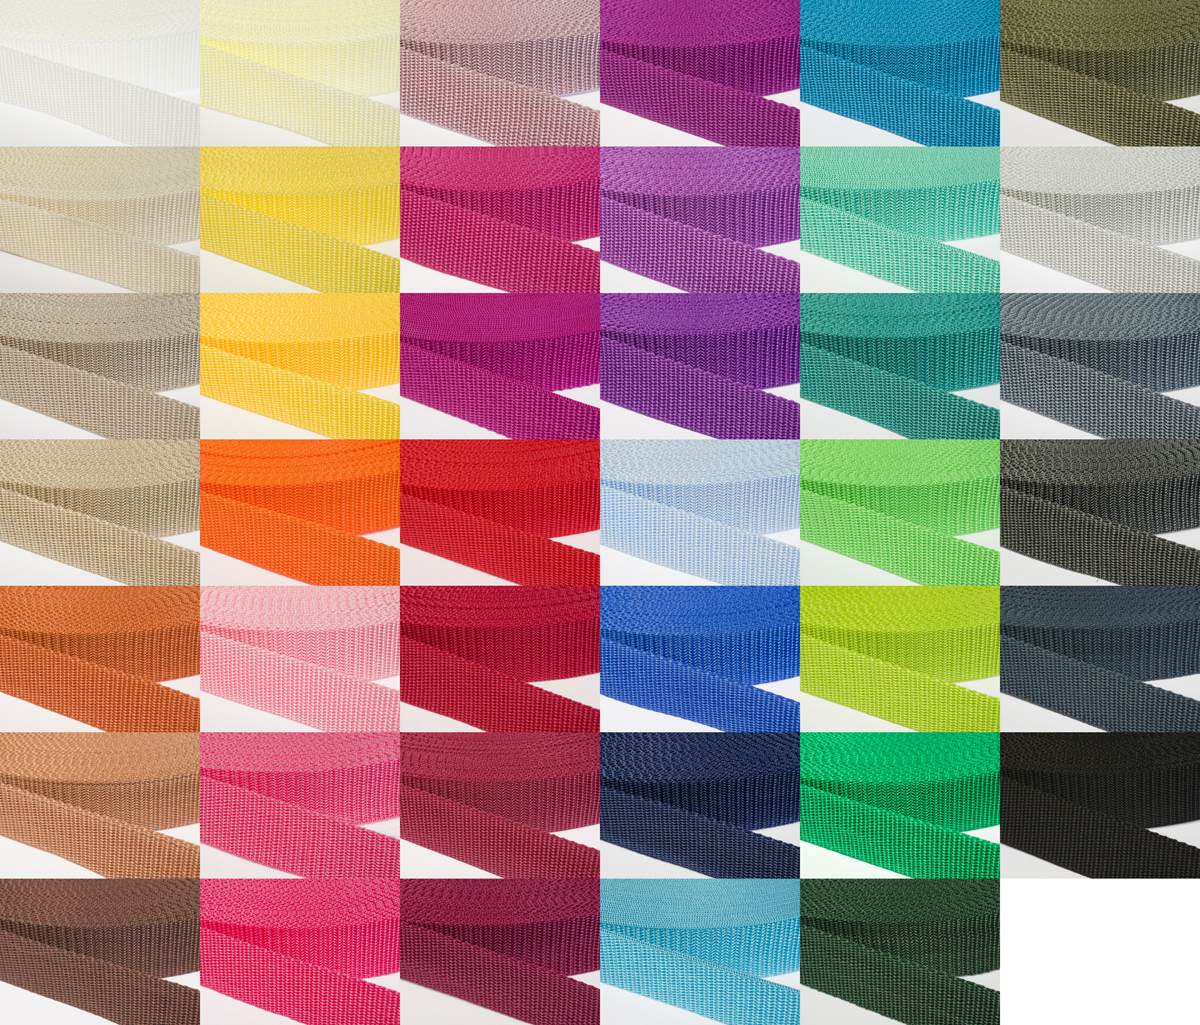 Gurtband 30mm breit aus Polypropylen in 41 Farben 07 - braun 50 Meter